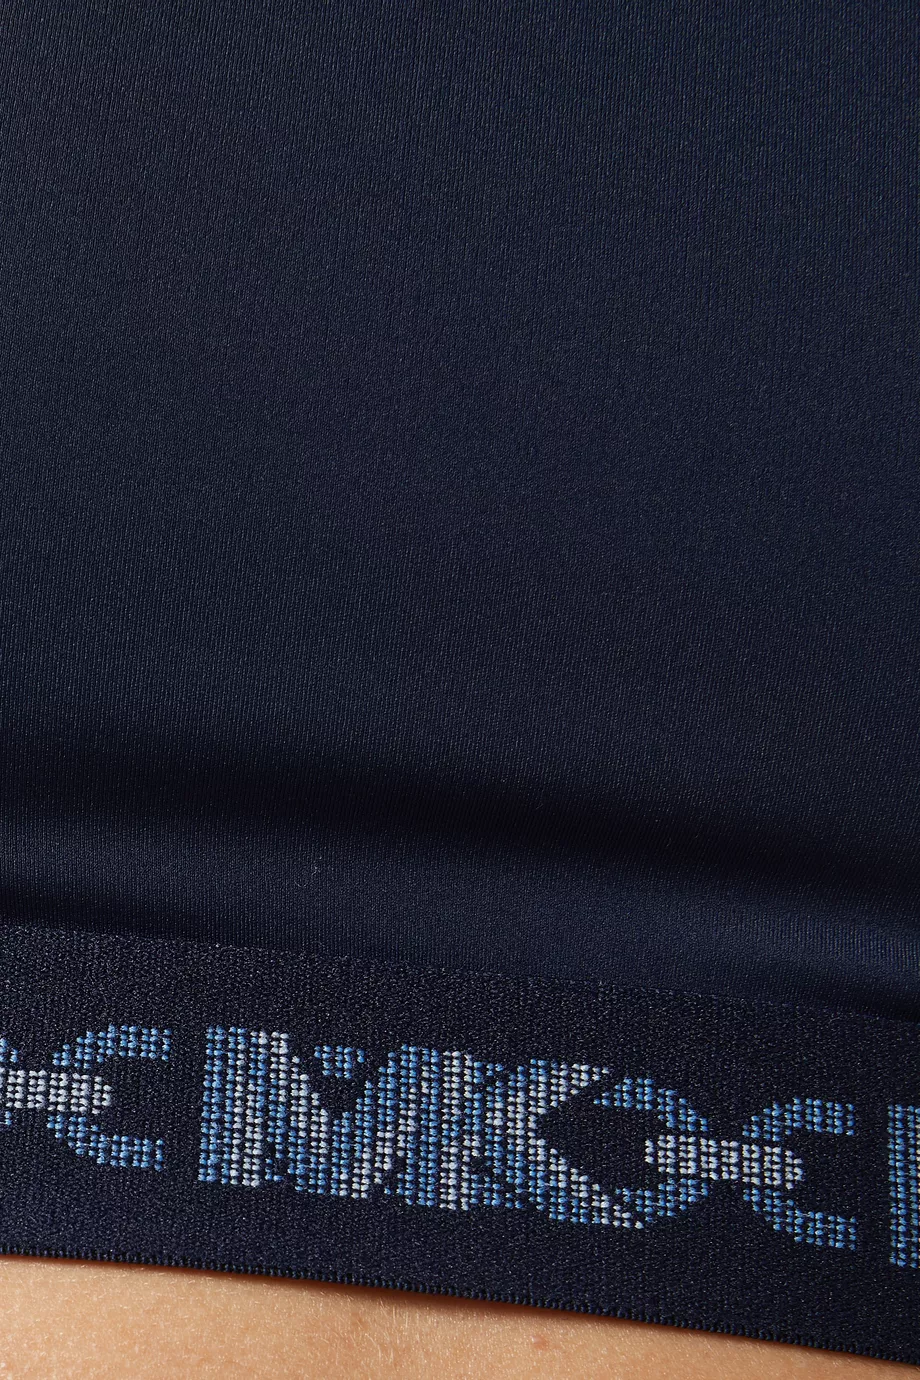 Buy Michael Kors Blue Empire Logo Tape Sports Bra in Recycled Nylon Blend  for Women in UAE